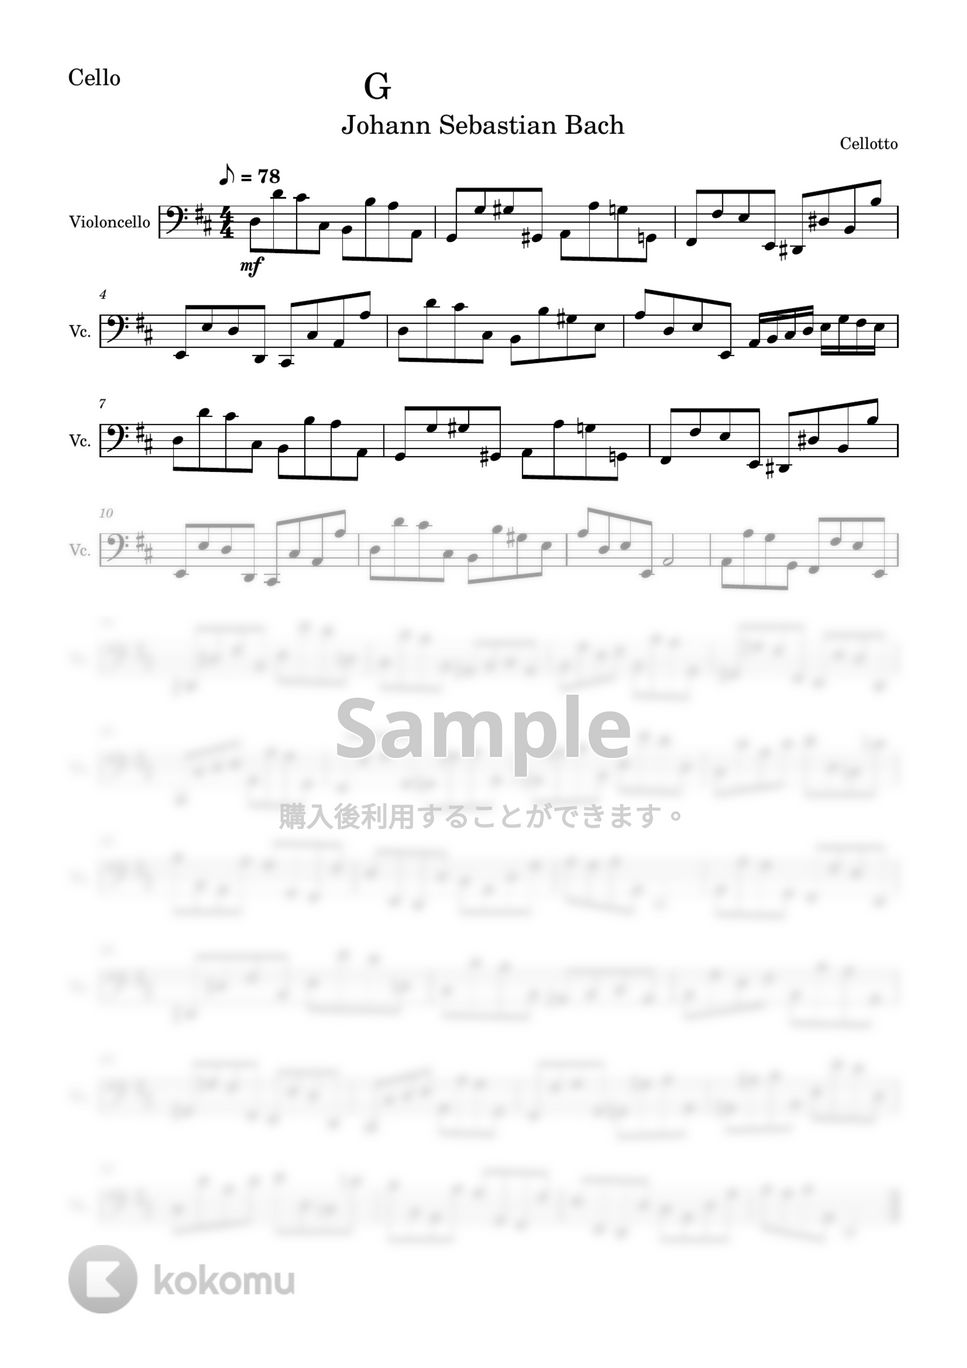 バッハ - G線上のアリア (チェロ - 弦楽四重奏) by Cellotto